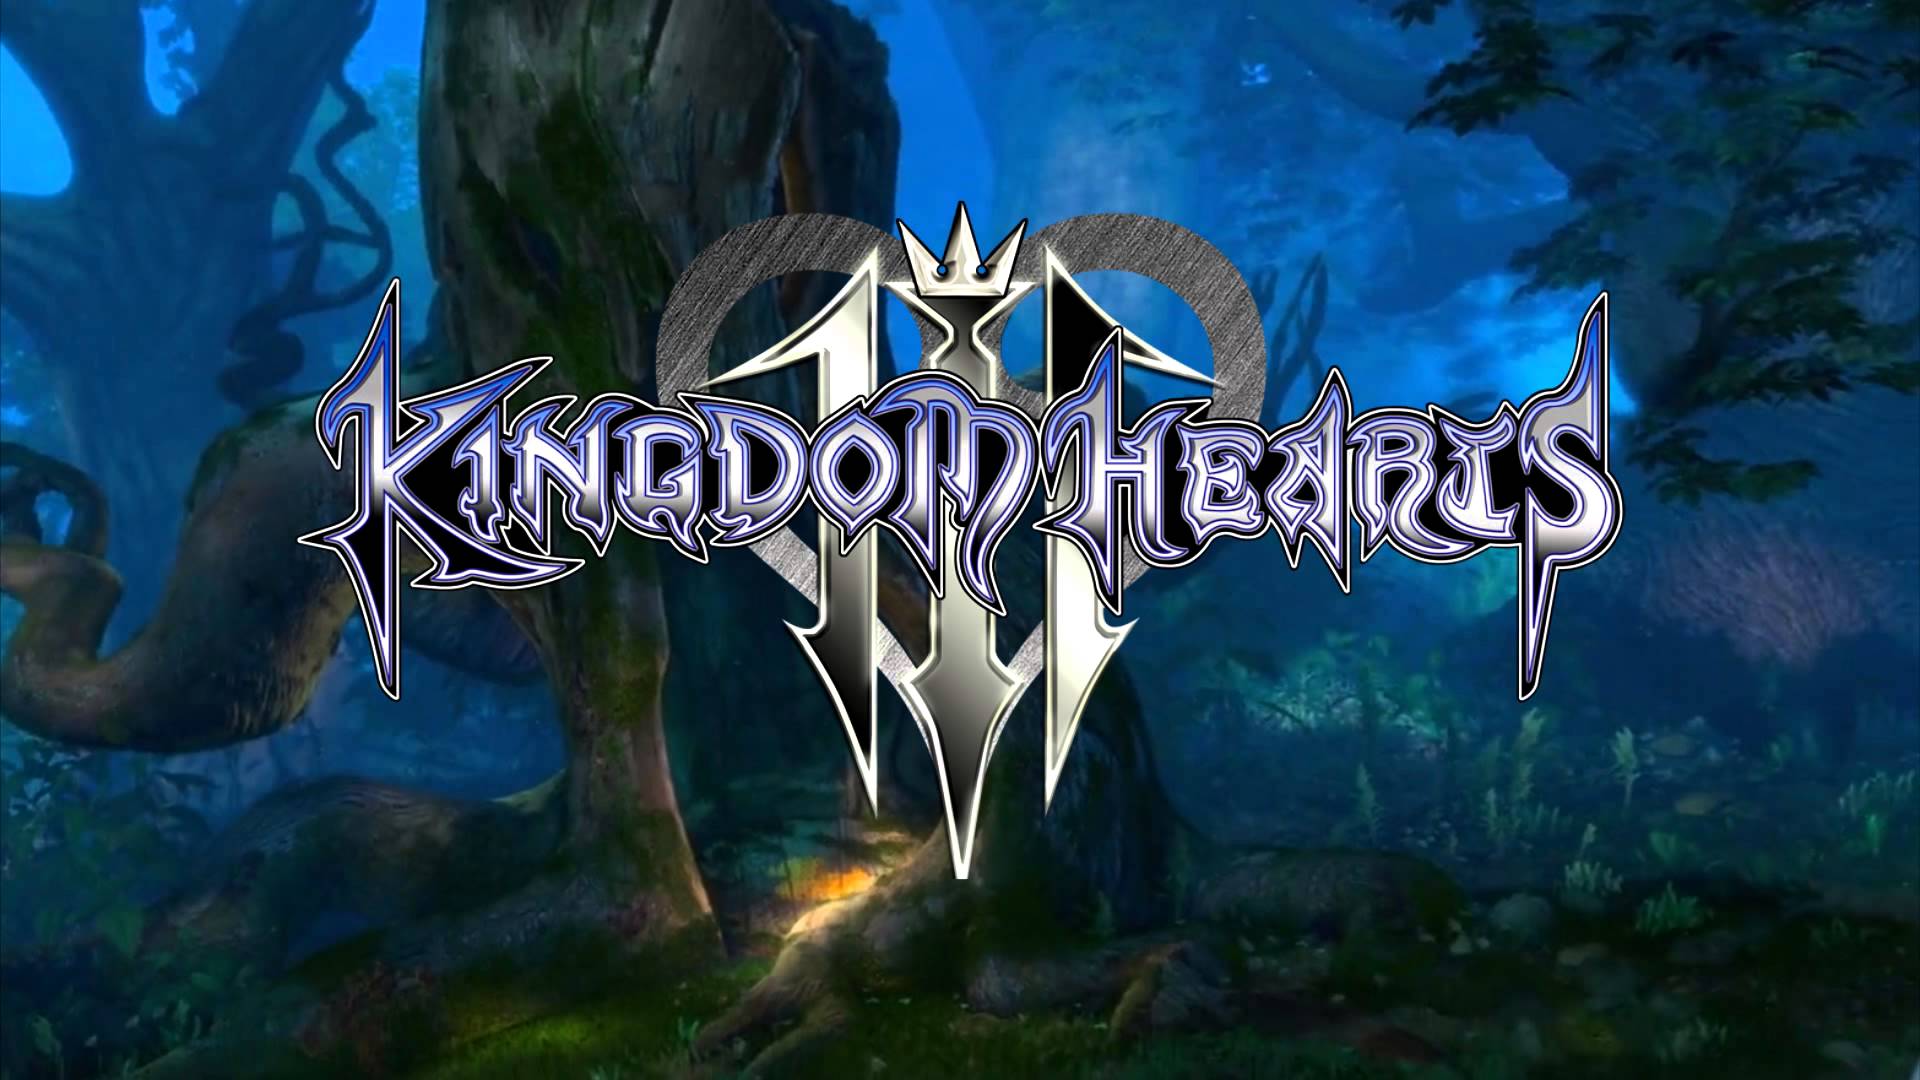 بررسی بازی Kingdom Hearts 3 – تلاقی تخیل شرق و غرب